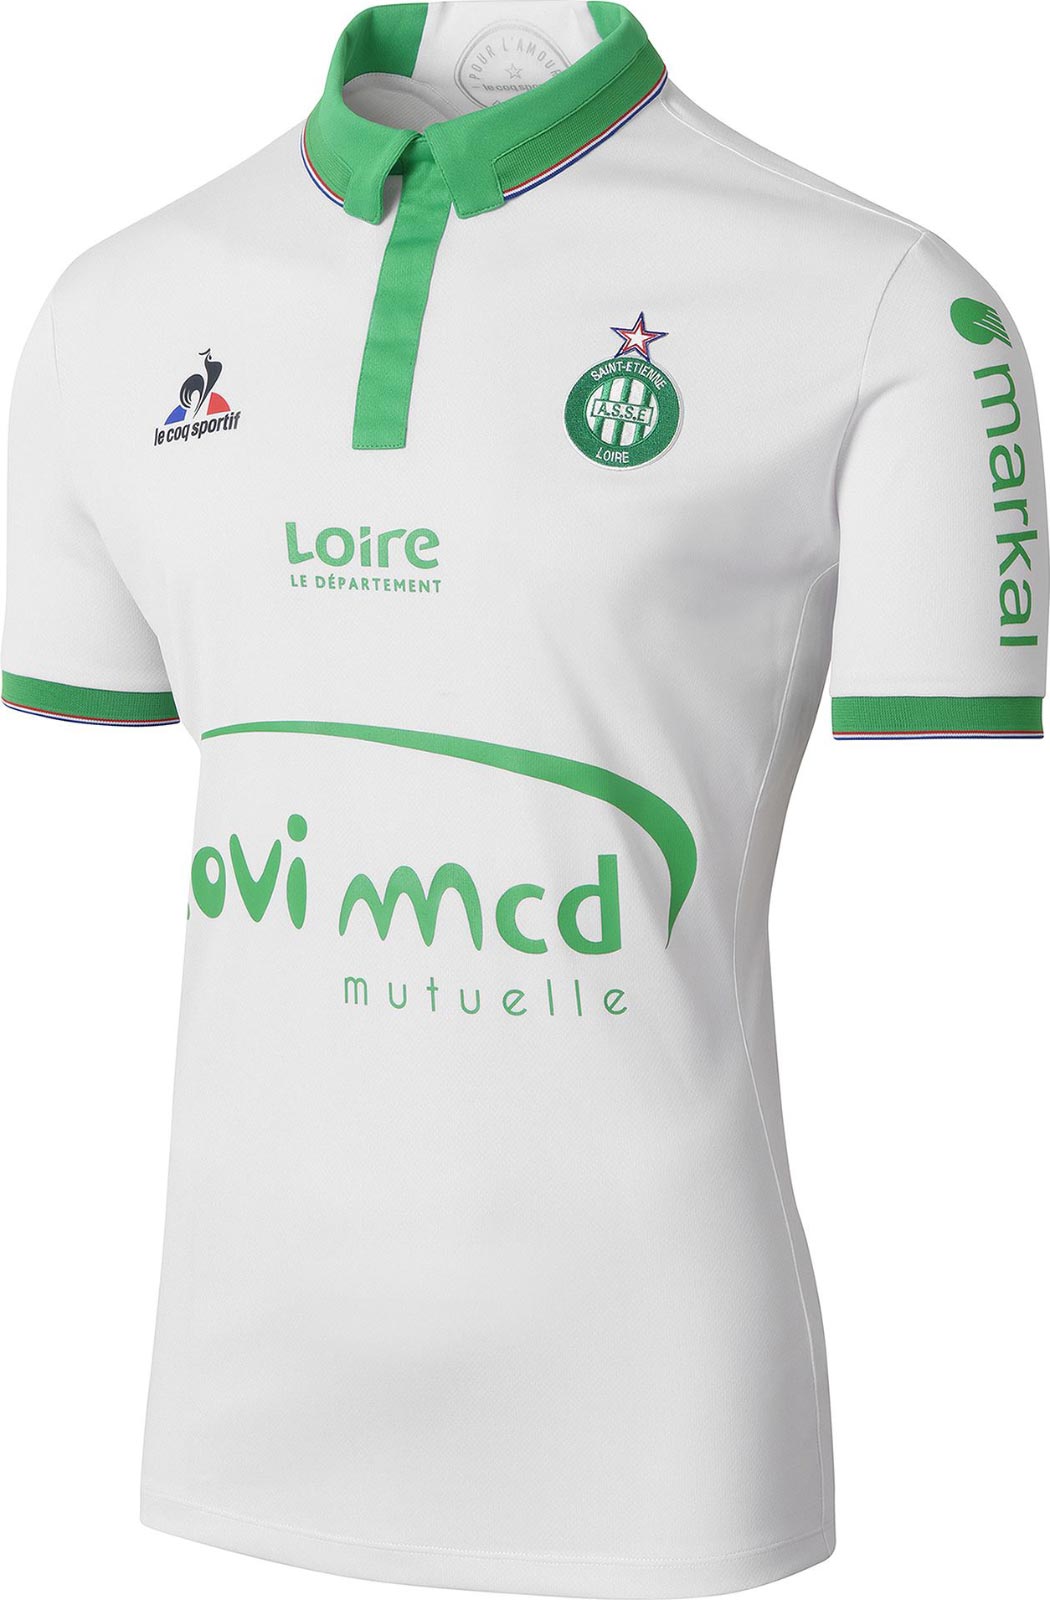 Maglie Ligue 1 2016/17